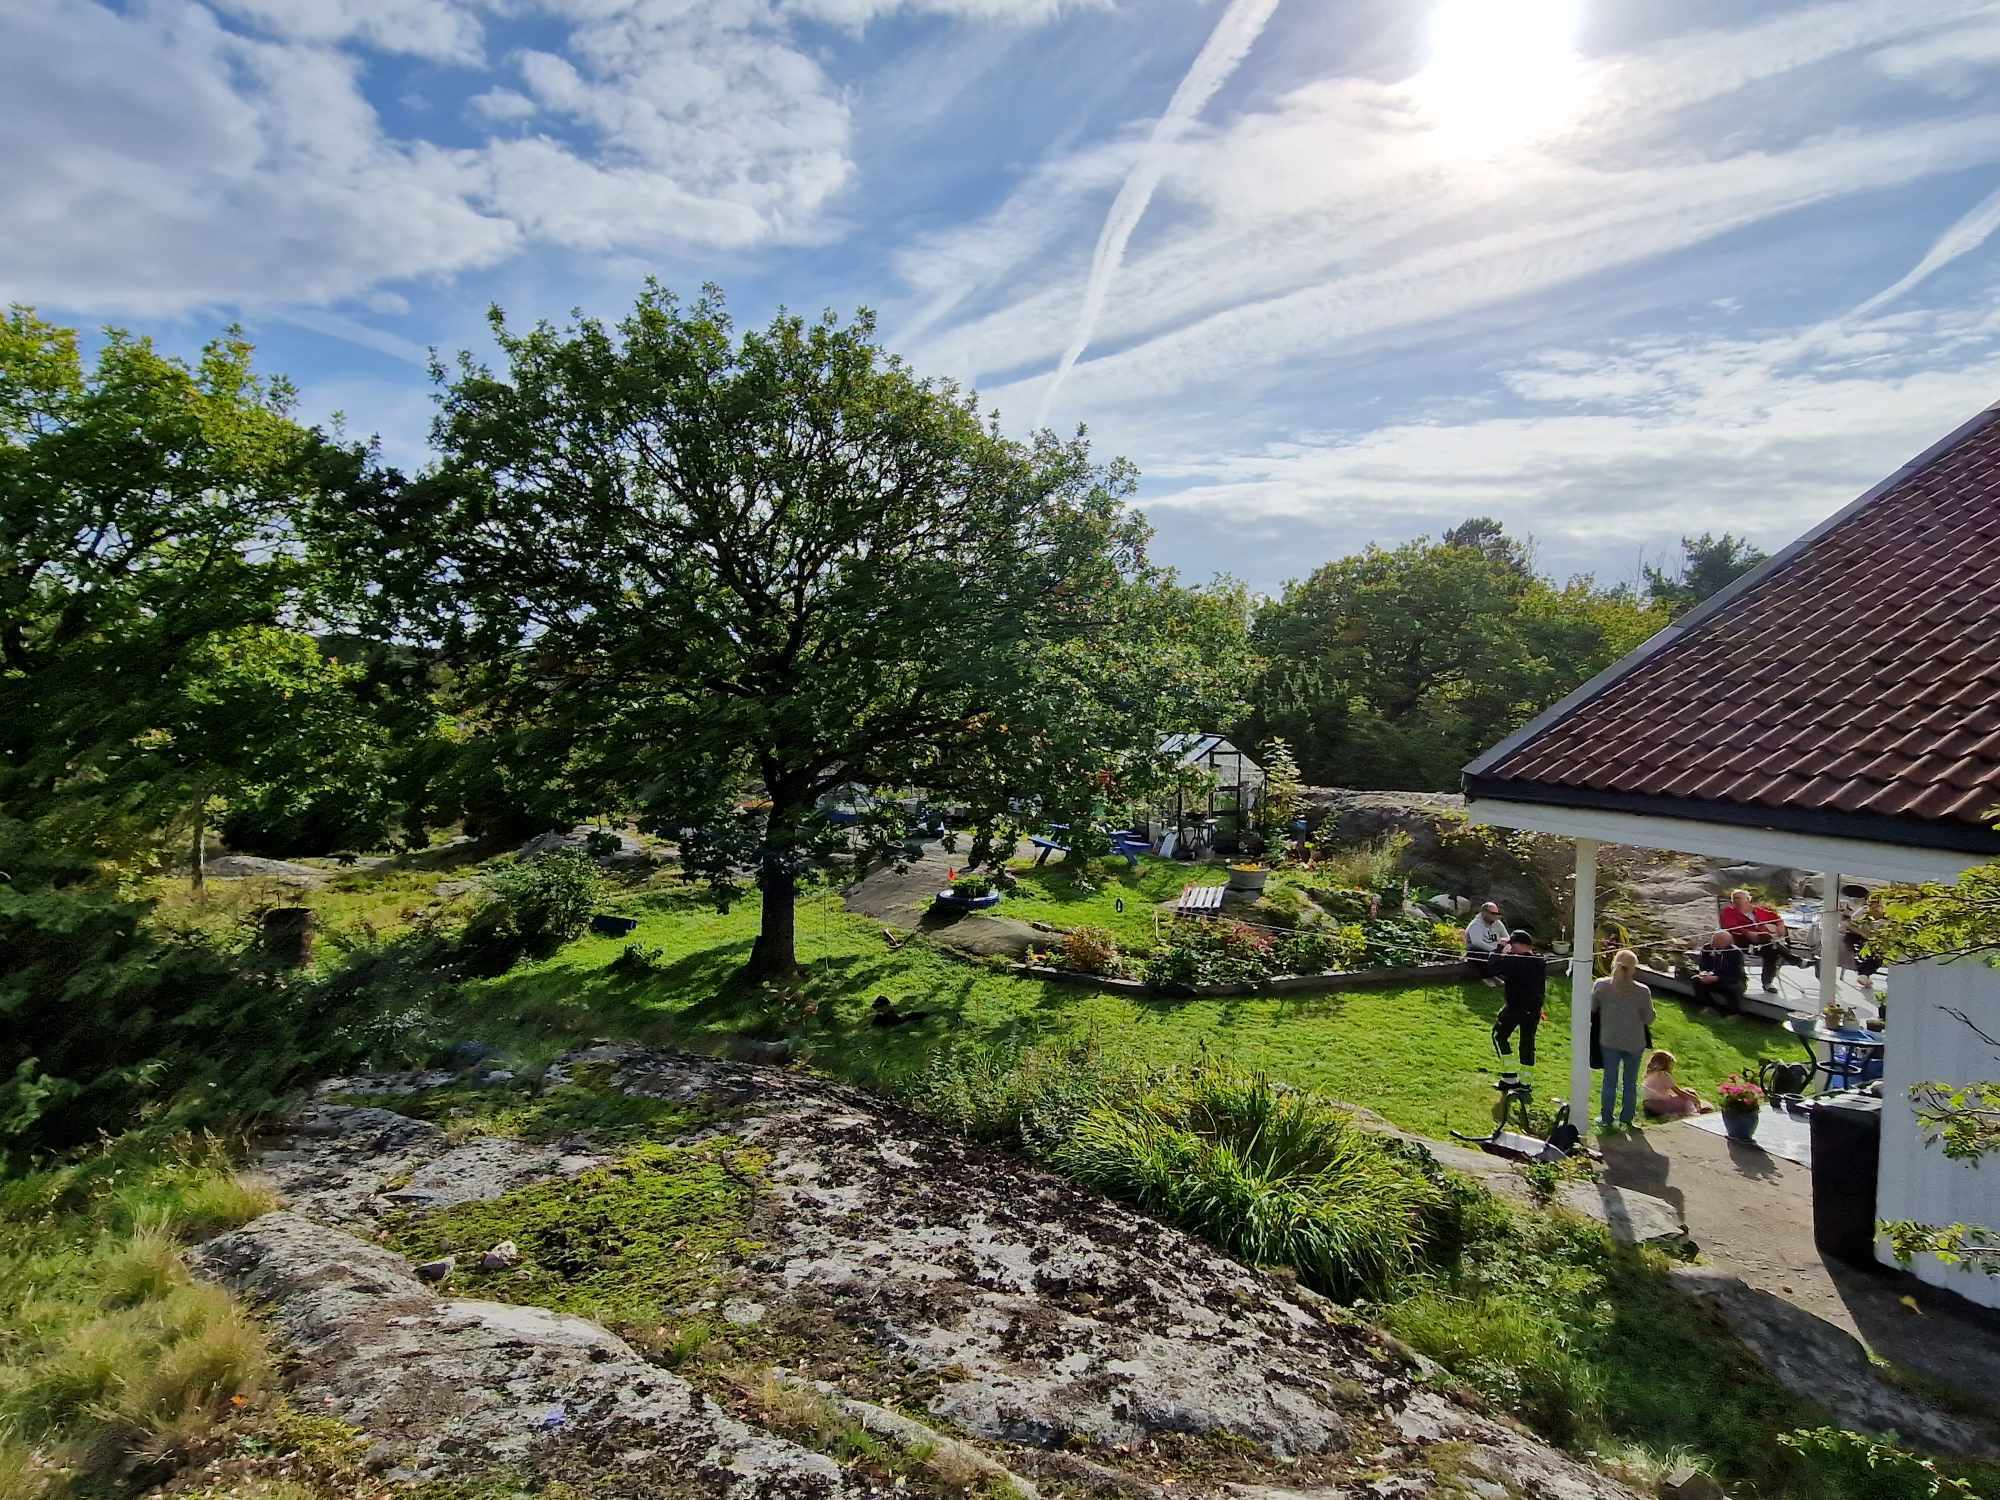 В Норвегии семья во дворе случайно обнаружила могилу викингов с украшениями в возрасте 1200 лет (фото)